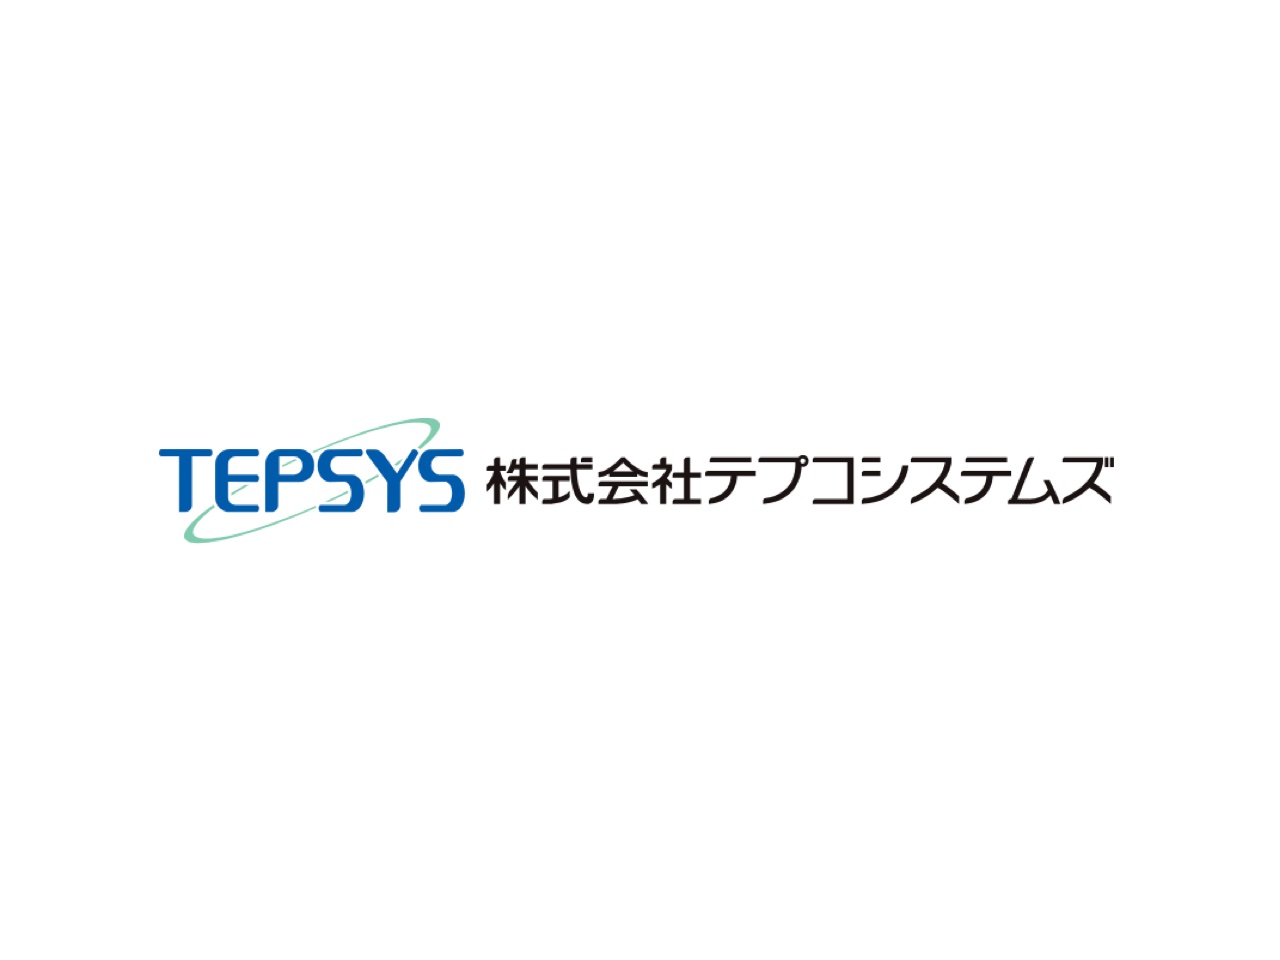 テプコシステムズは、東京電力ホールディングス100％出資のグループ企業だ。